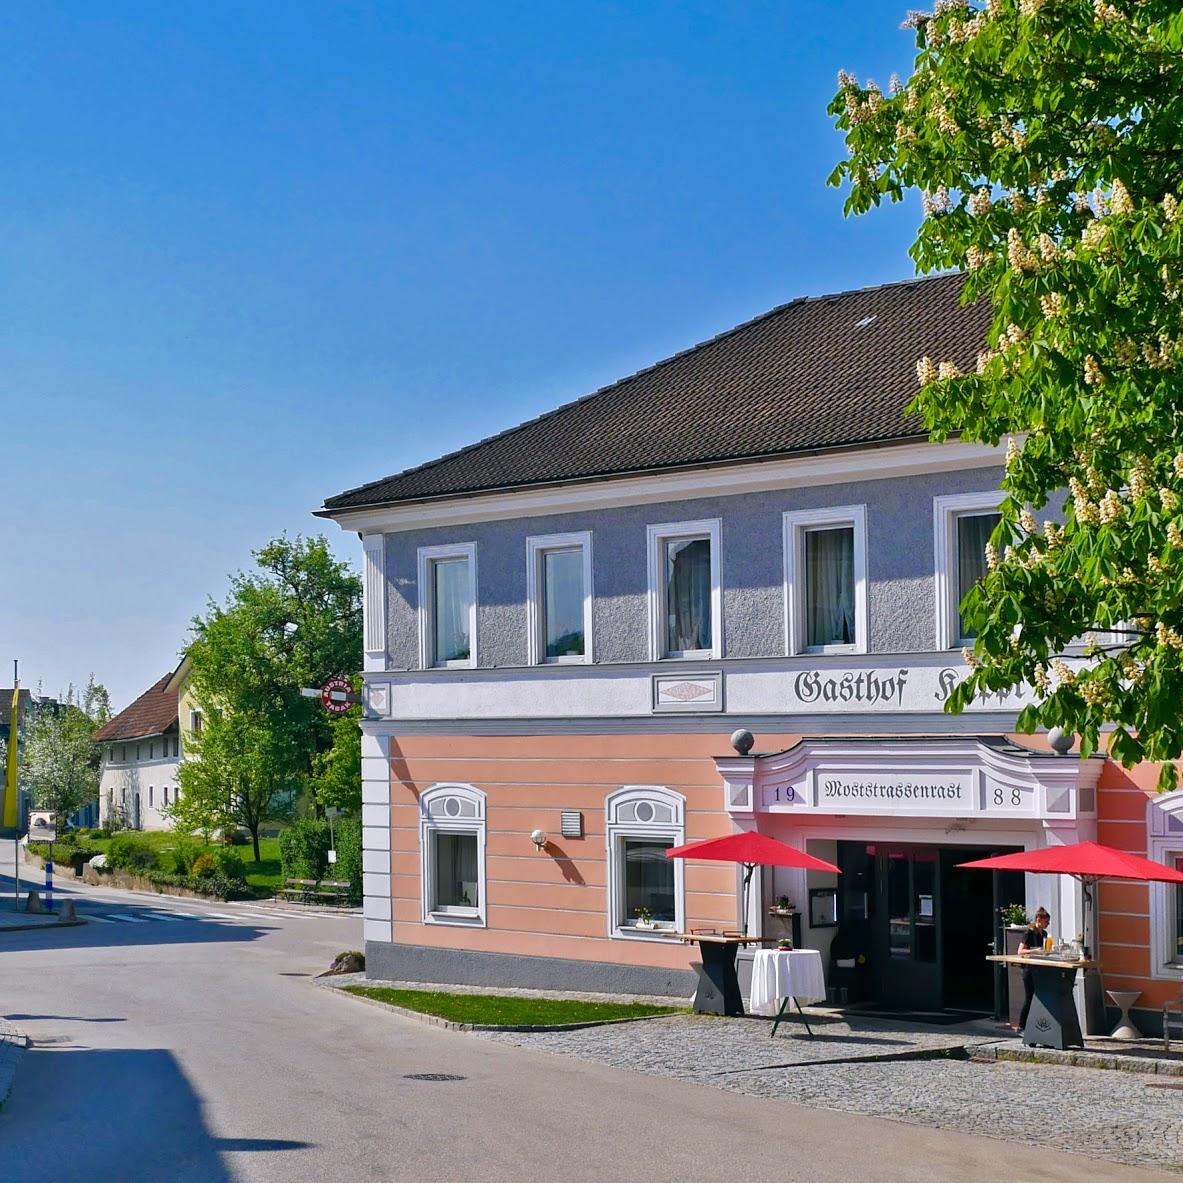 Restaurant "Gasthaus Kappl Moststraßenrast" in Biberbach